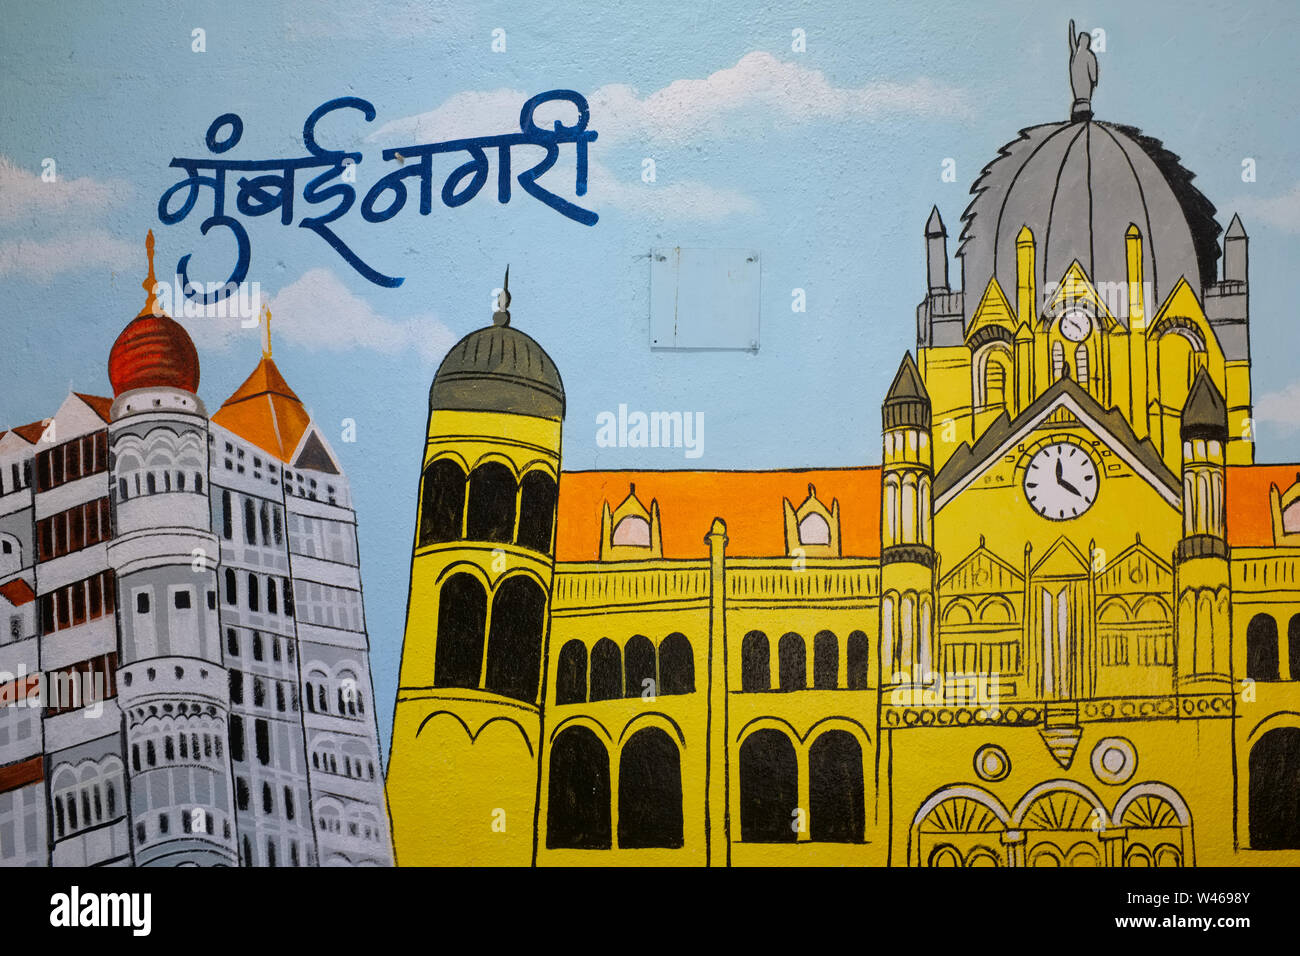 Une peinture murale de Maharaj Chhatrapati Shivaji Terminus, représentant le succ. lui-même et le Taj Mahal Hotel, sous l'écriture 'Mumbai Marathi City' Banque D'Images